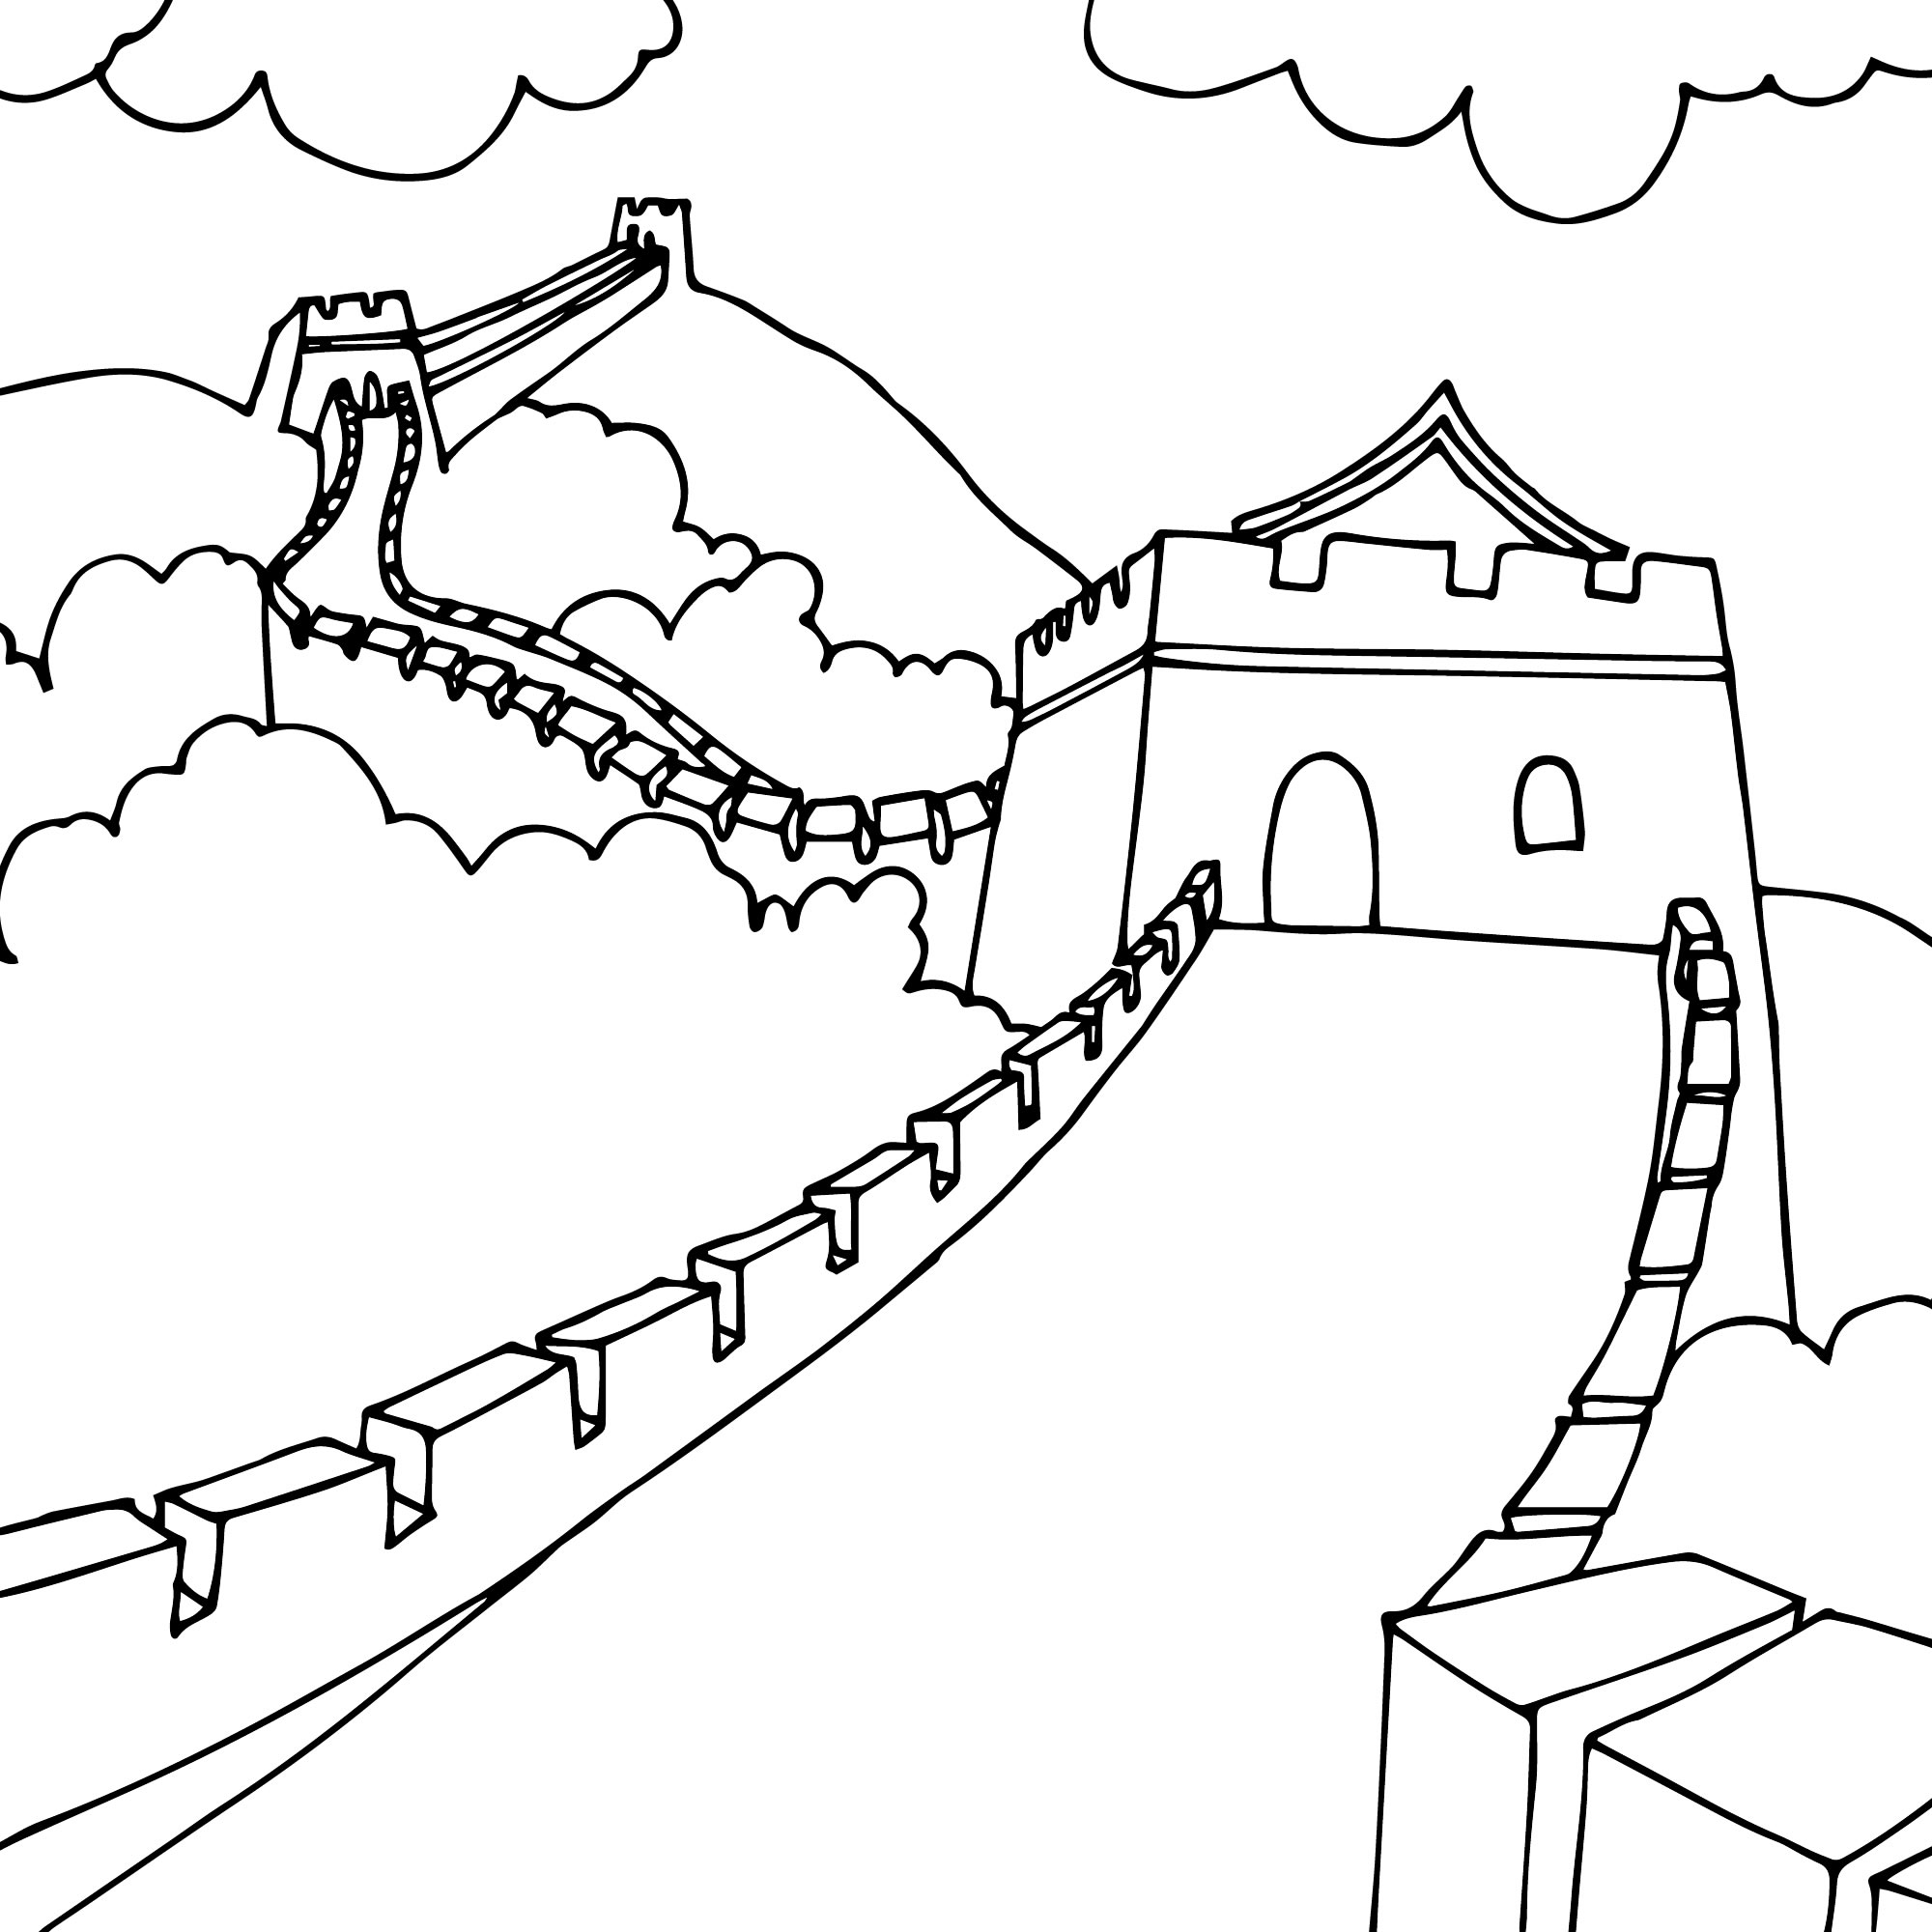 Раскраска Великая Китайская стена | Раскраски сооружений построенных до нашей эры